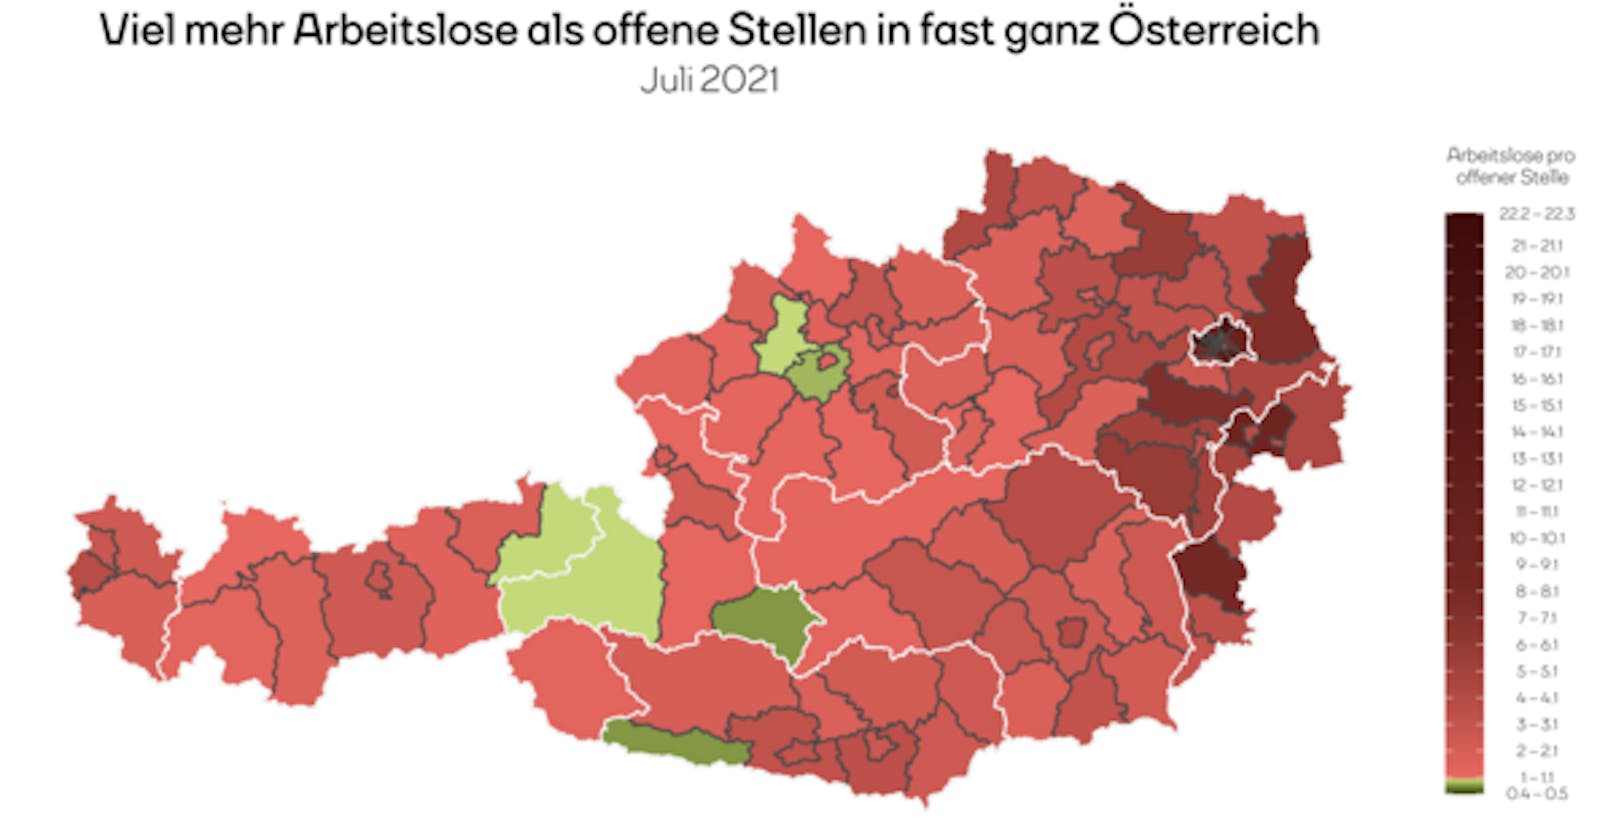 In Tamsweg, Zell am See (beide S), Hermagor (K), Wels-Land, Grieskirchen (beide OÖ) und Kitzbühel (T) gibt es weniger Arbeitslose als offene Stellen.